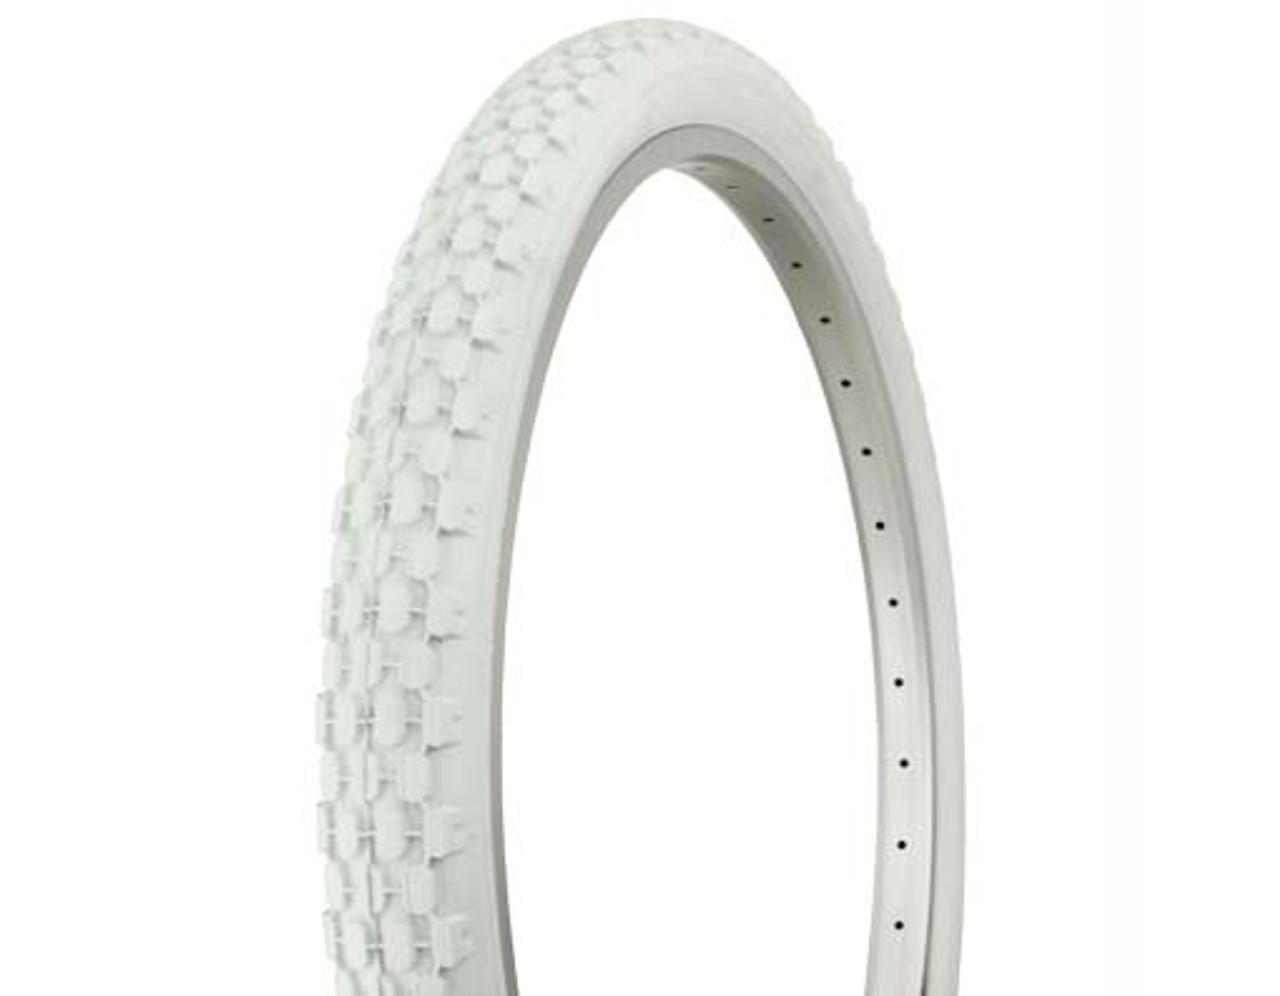 26 inch white wall bike tires